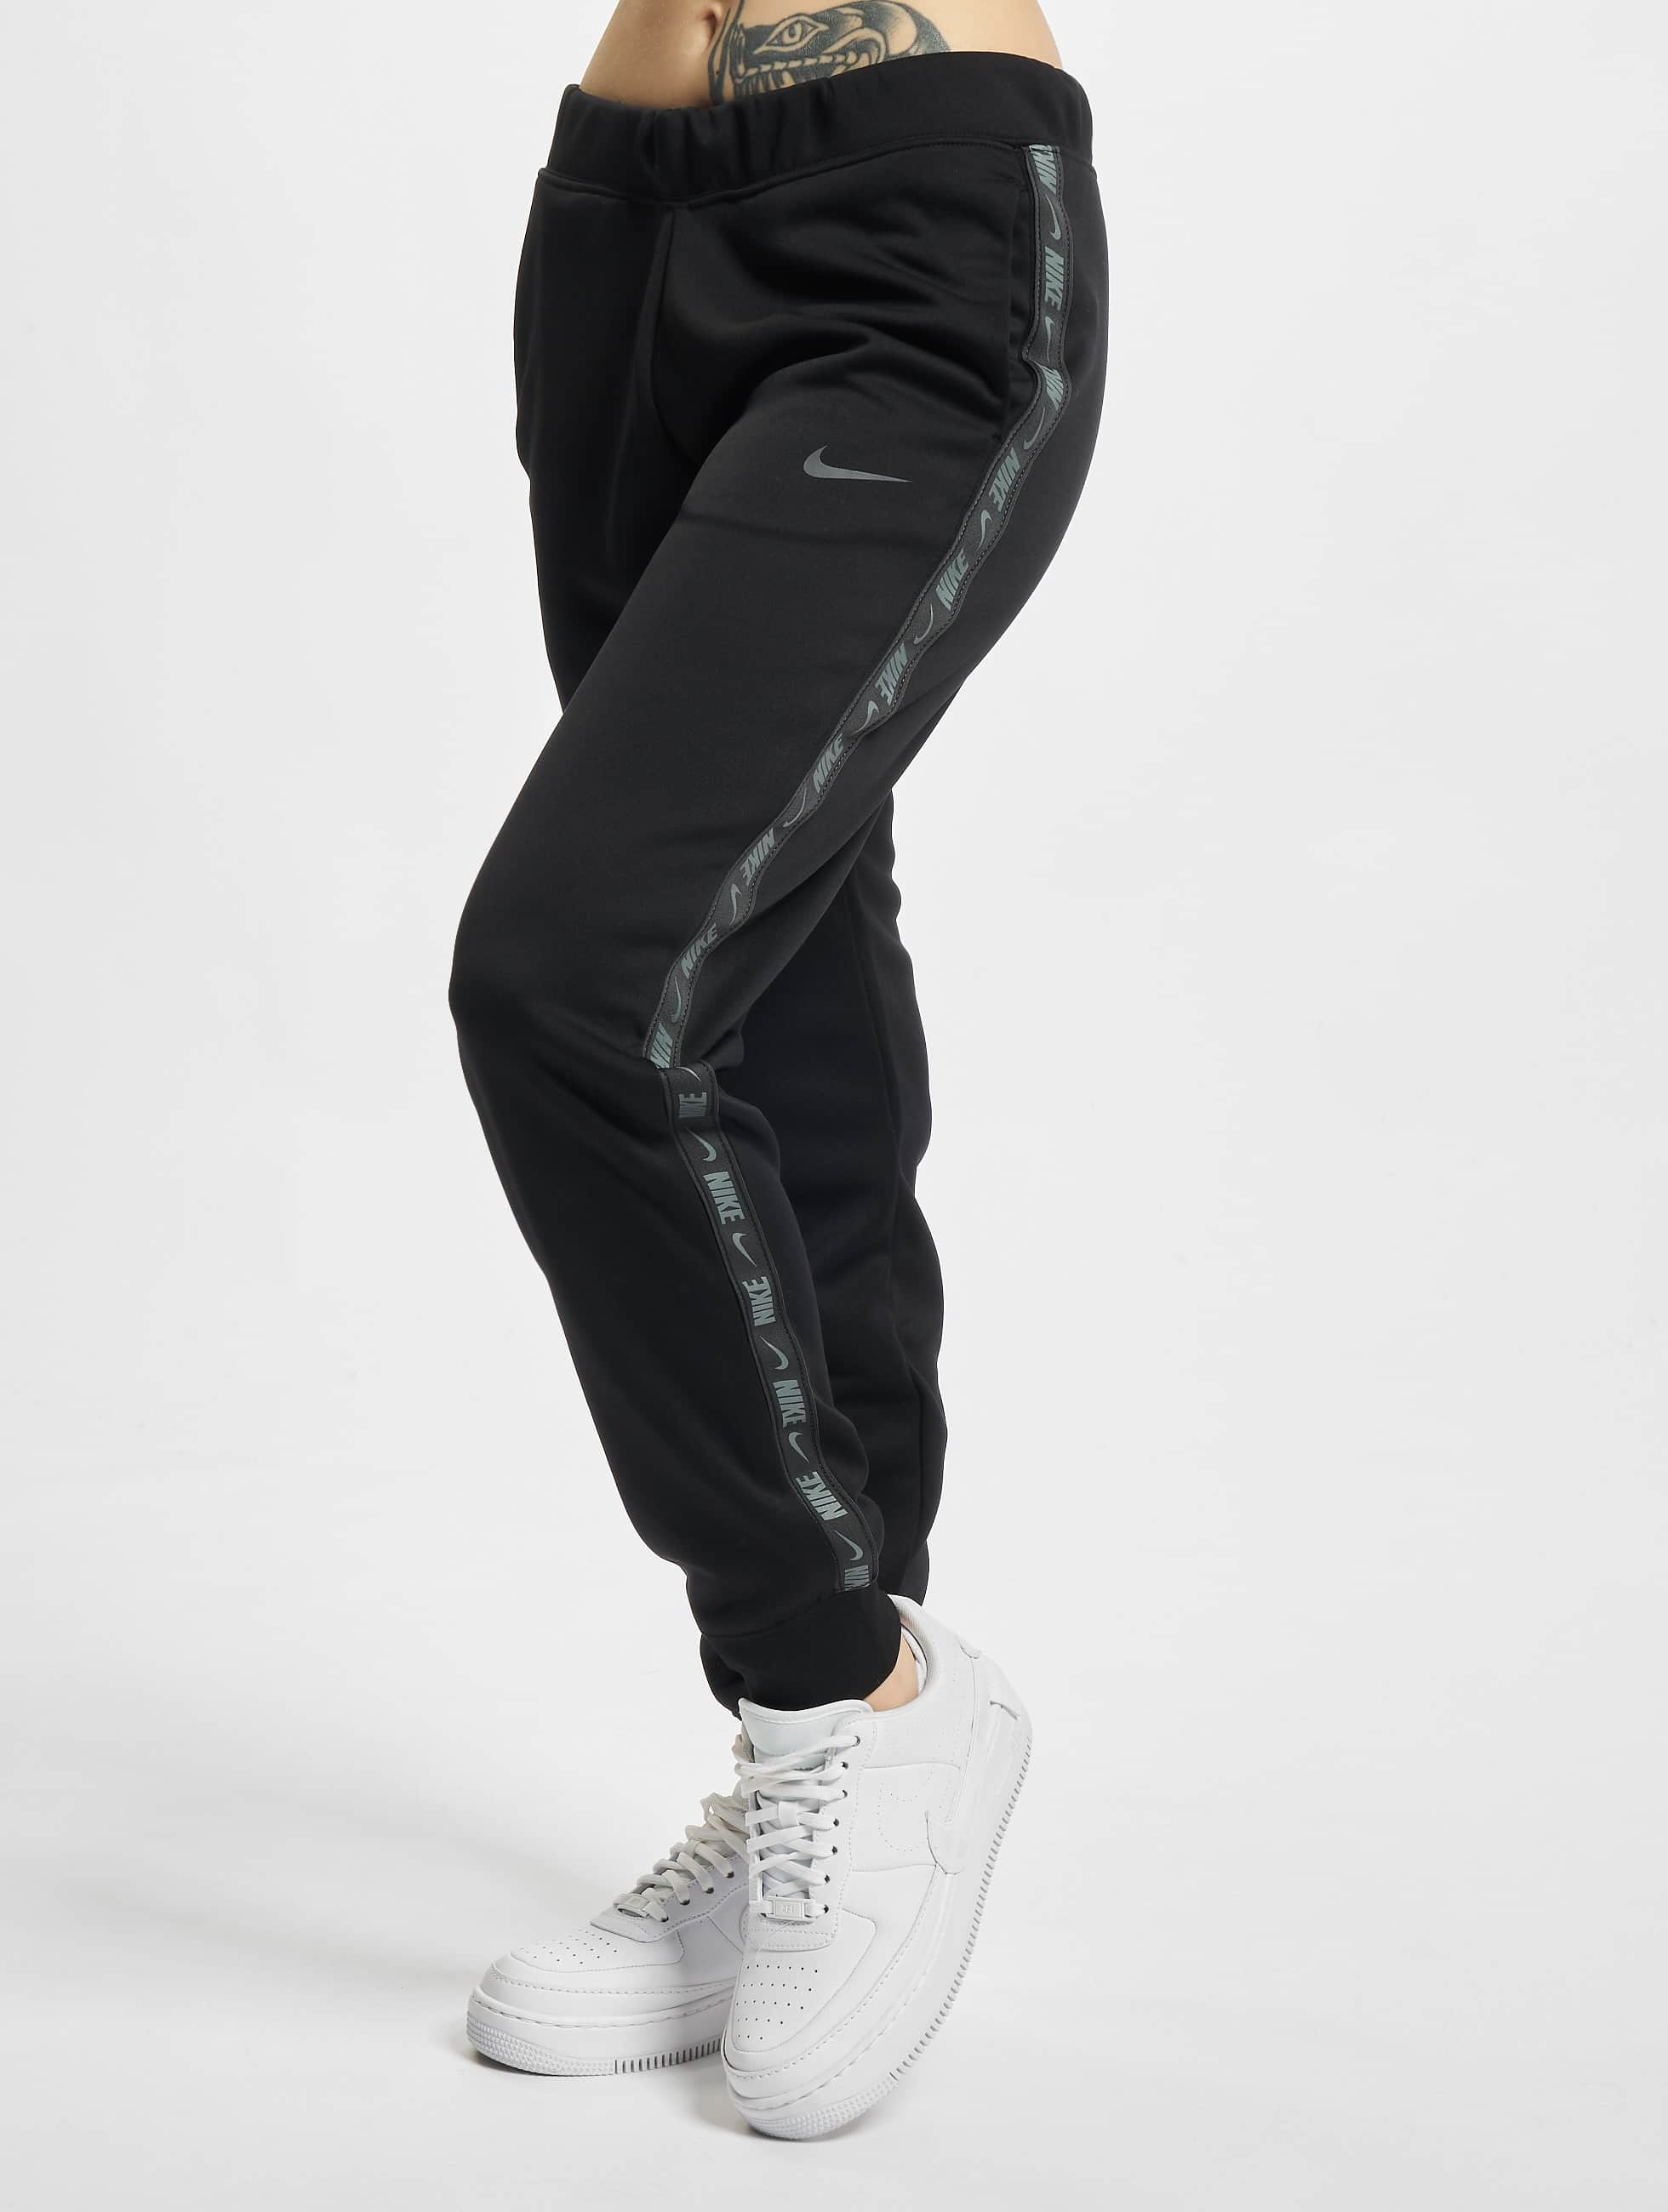 Nike Pantalón / Pantalón deportivo NSW en negro 856062